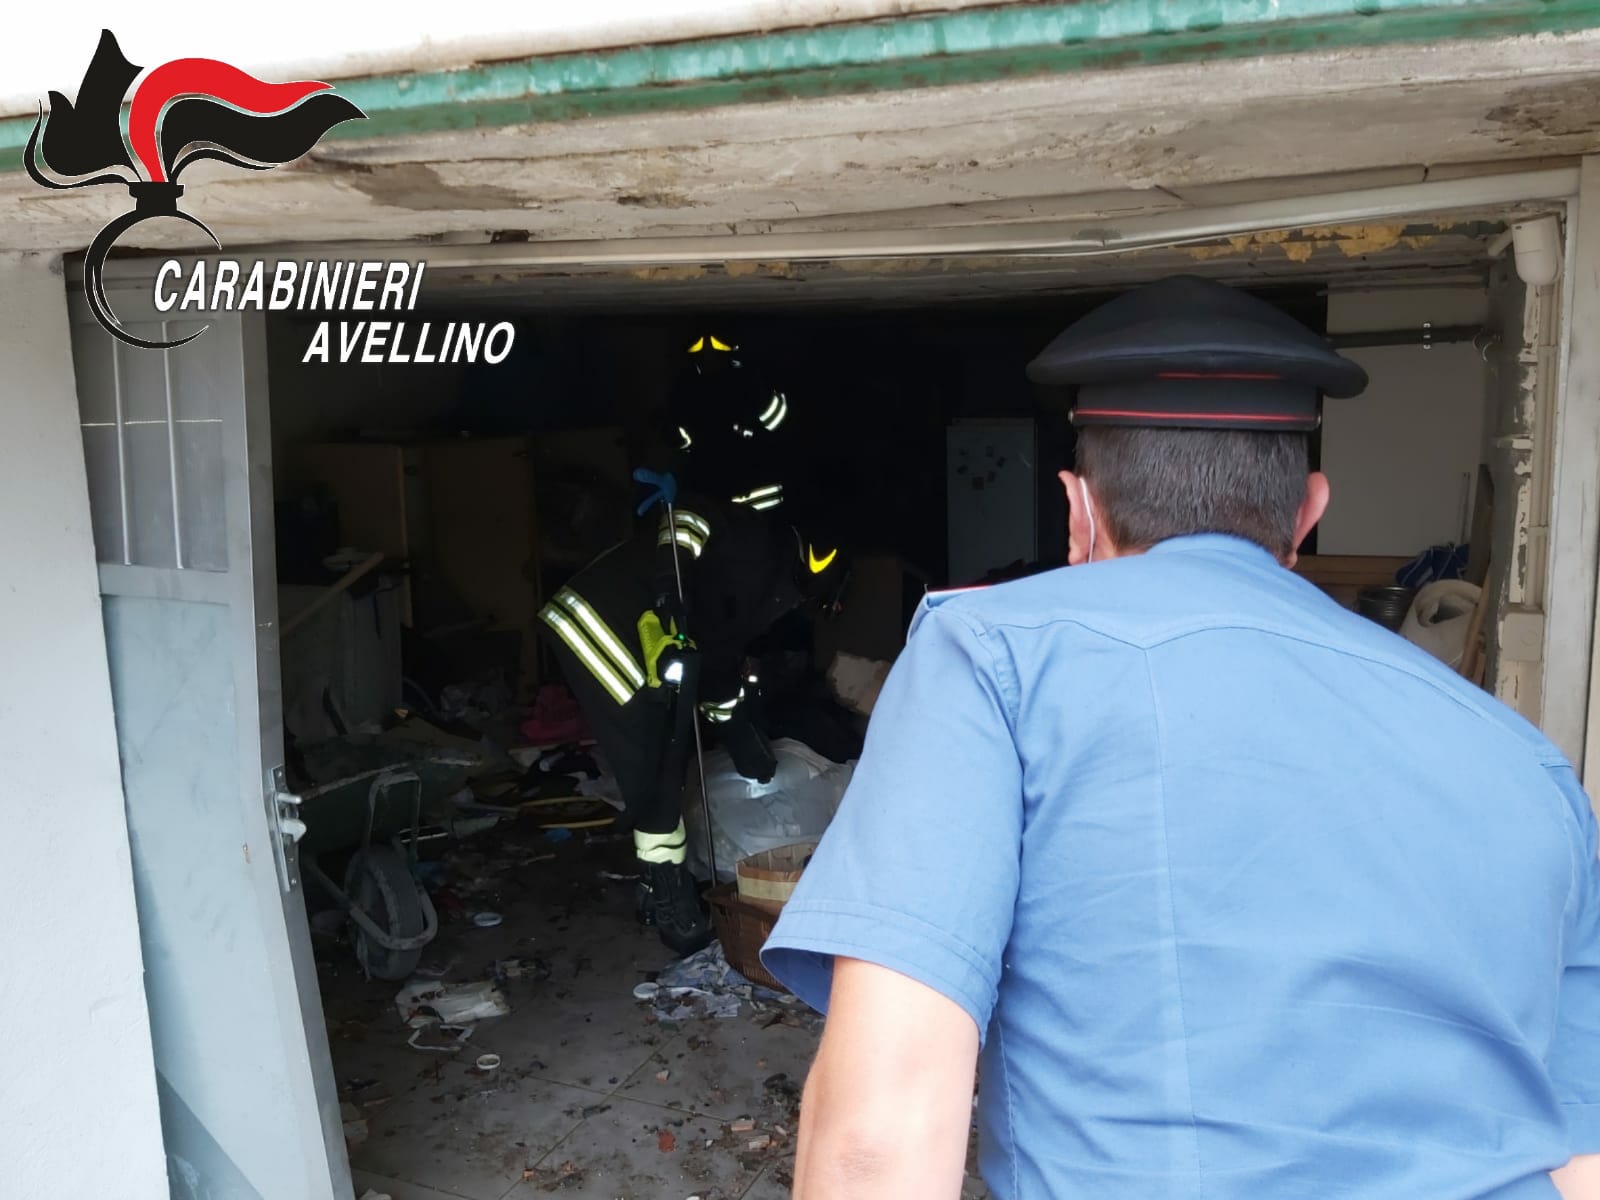 Castel Baronia| Esplosione in un garage: nessun ferito, solo un grande spavento tra i residenti